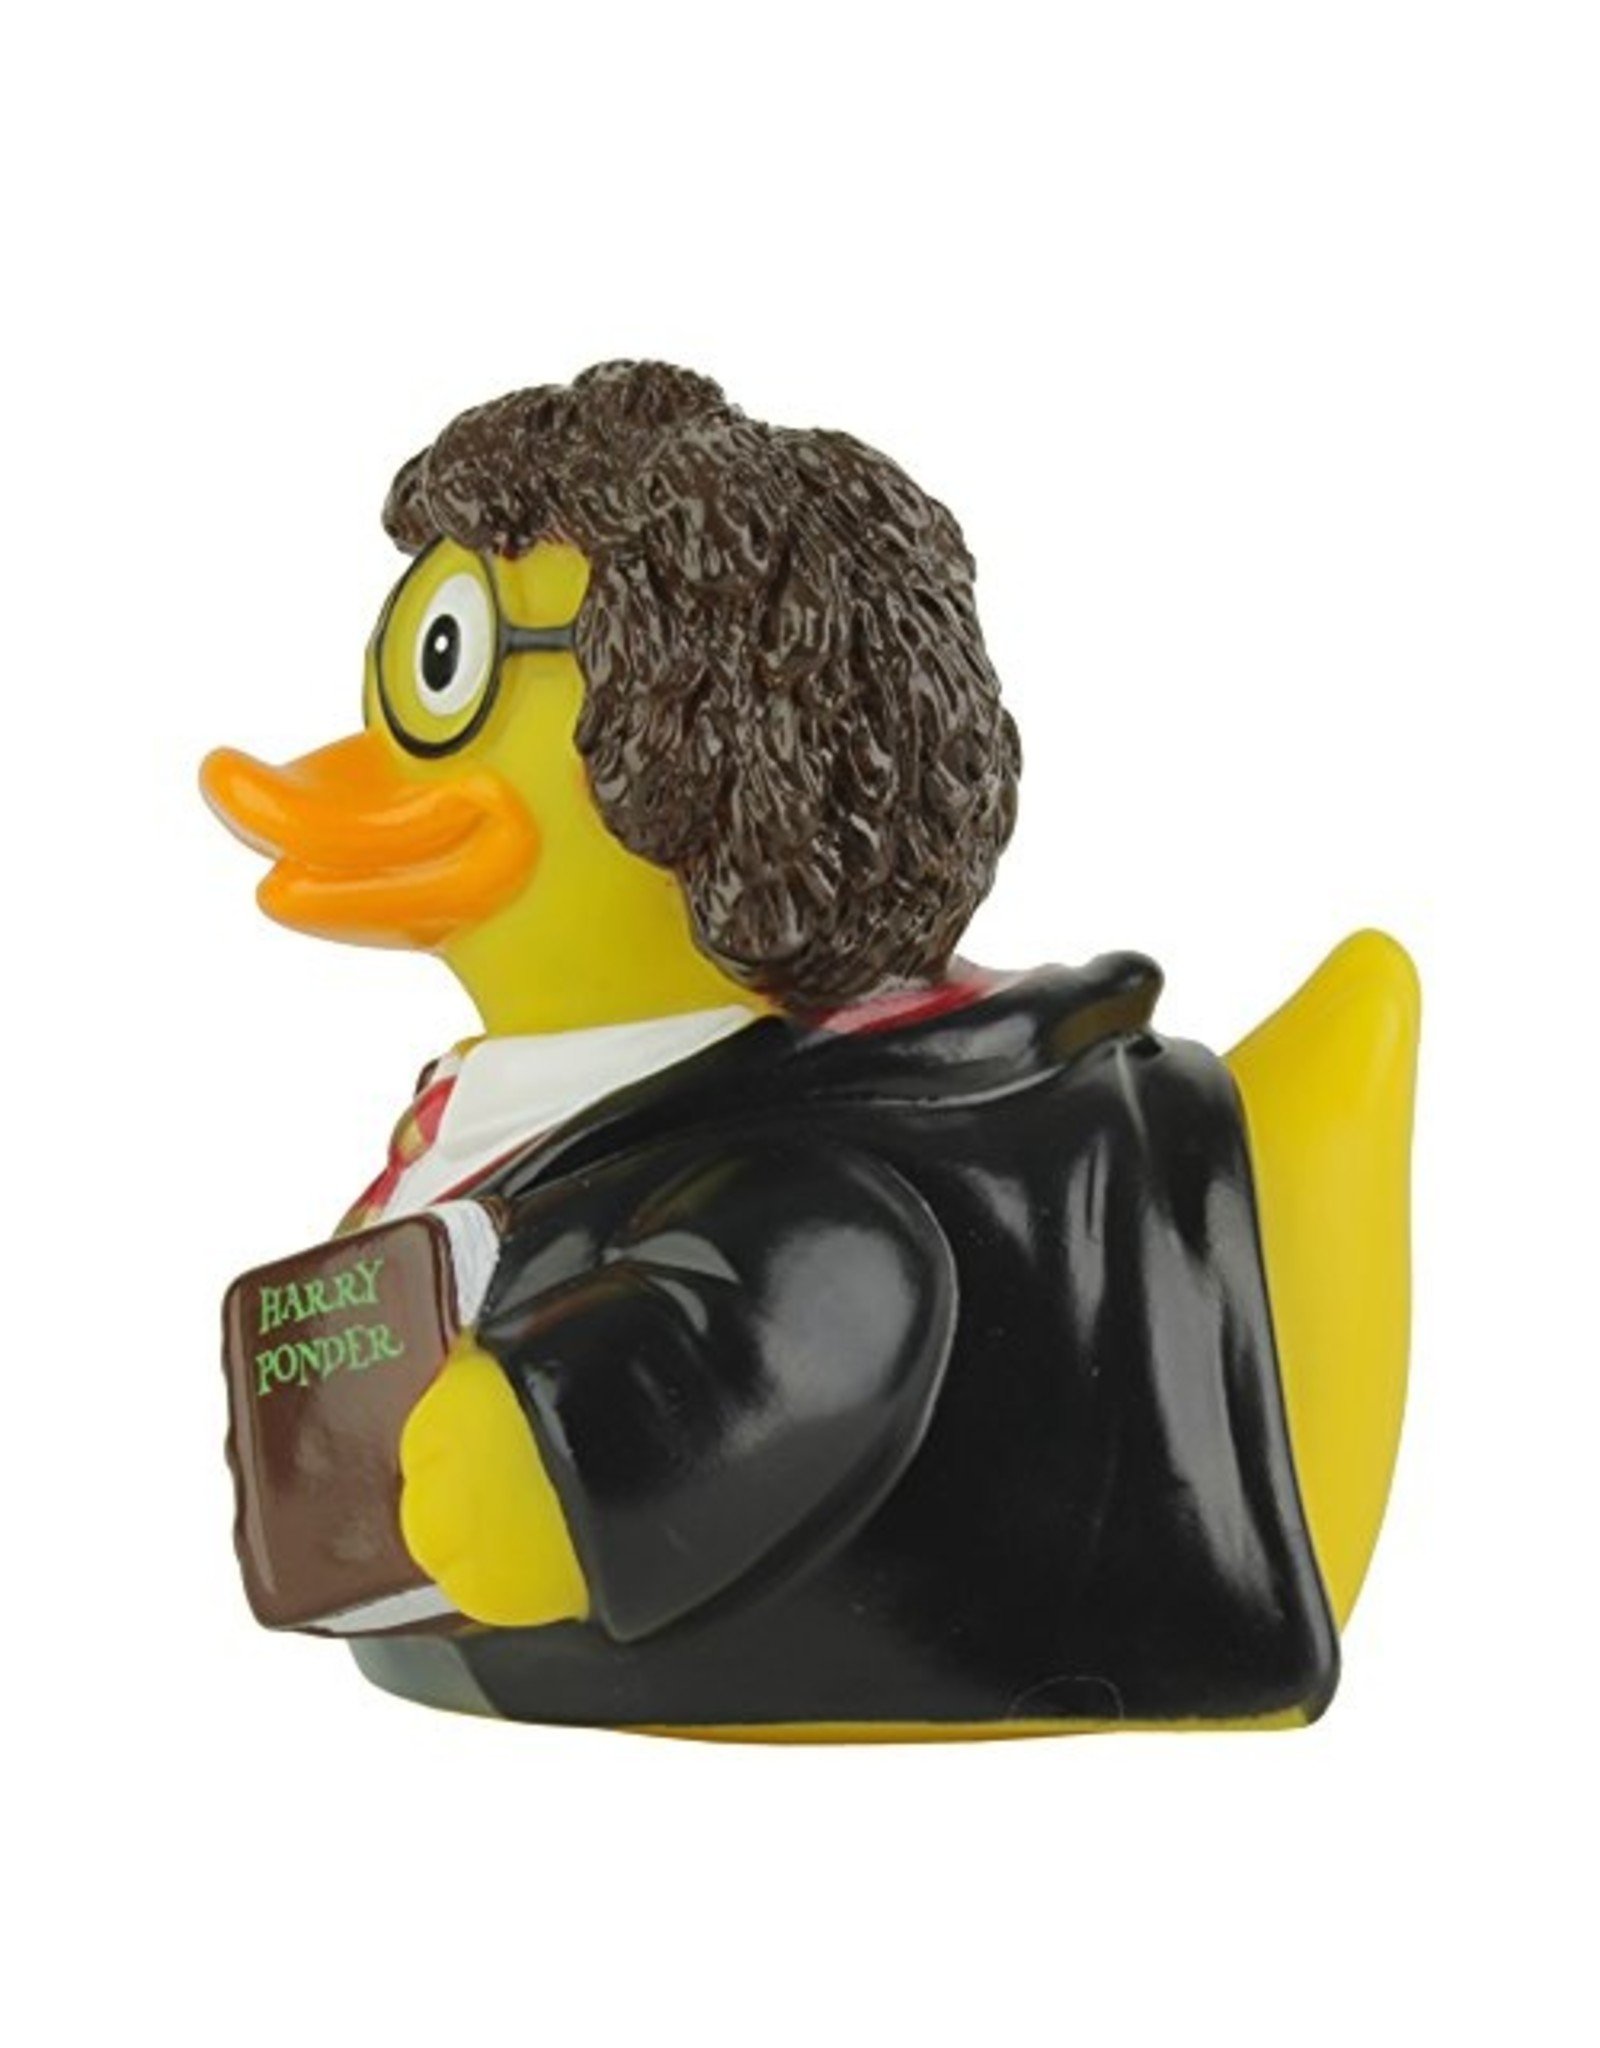 Harry Ponder Rubber Duck